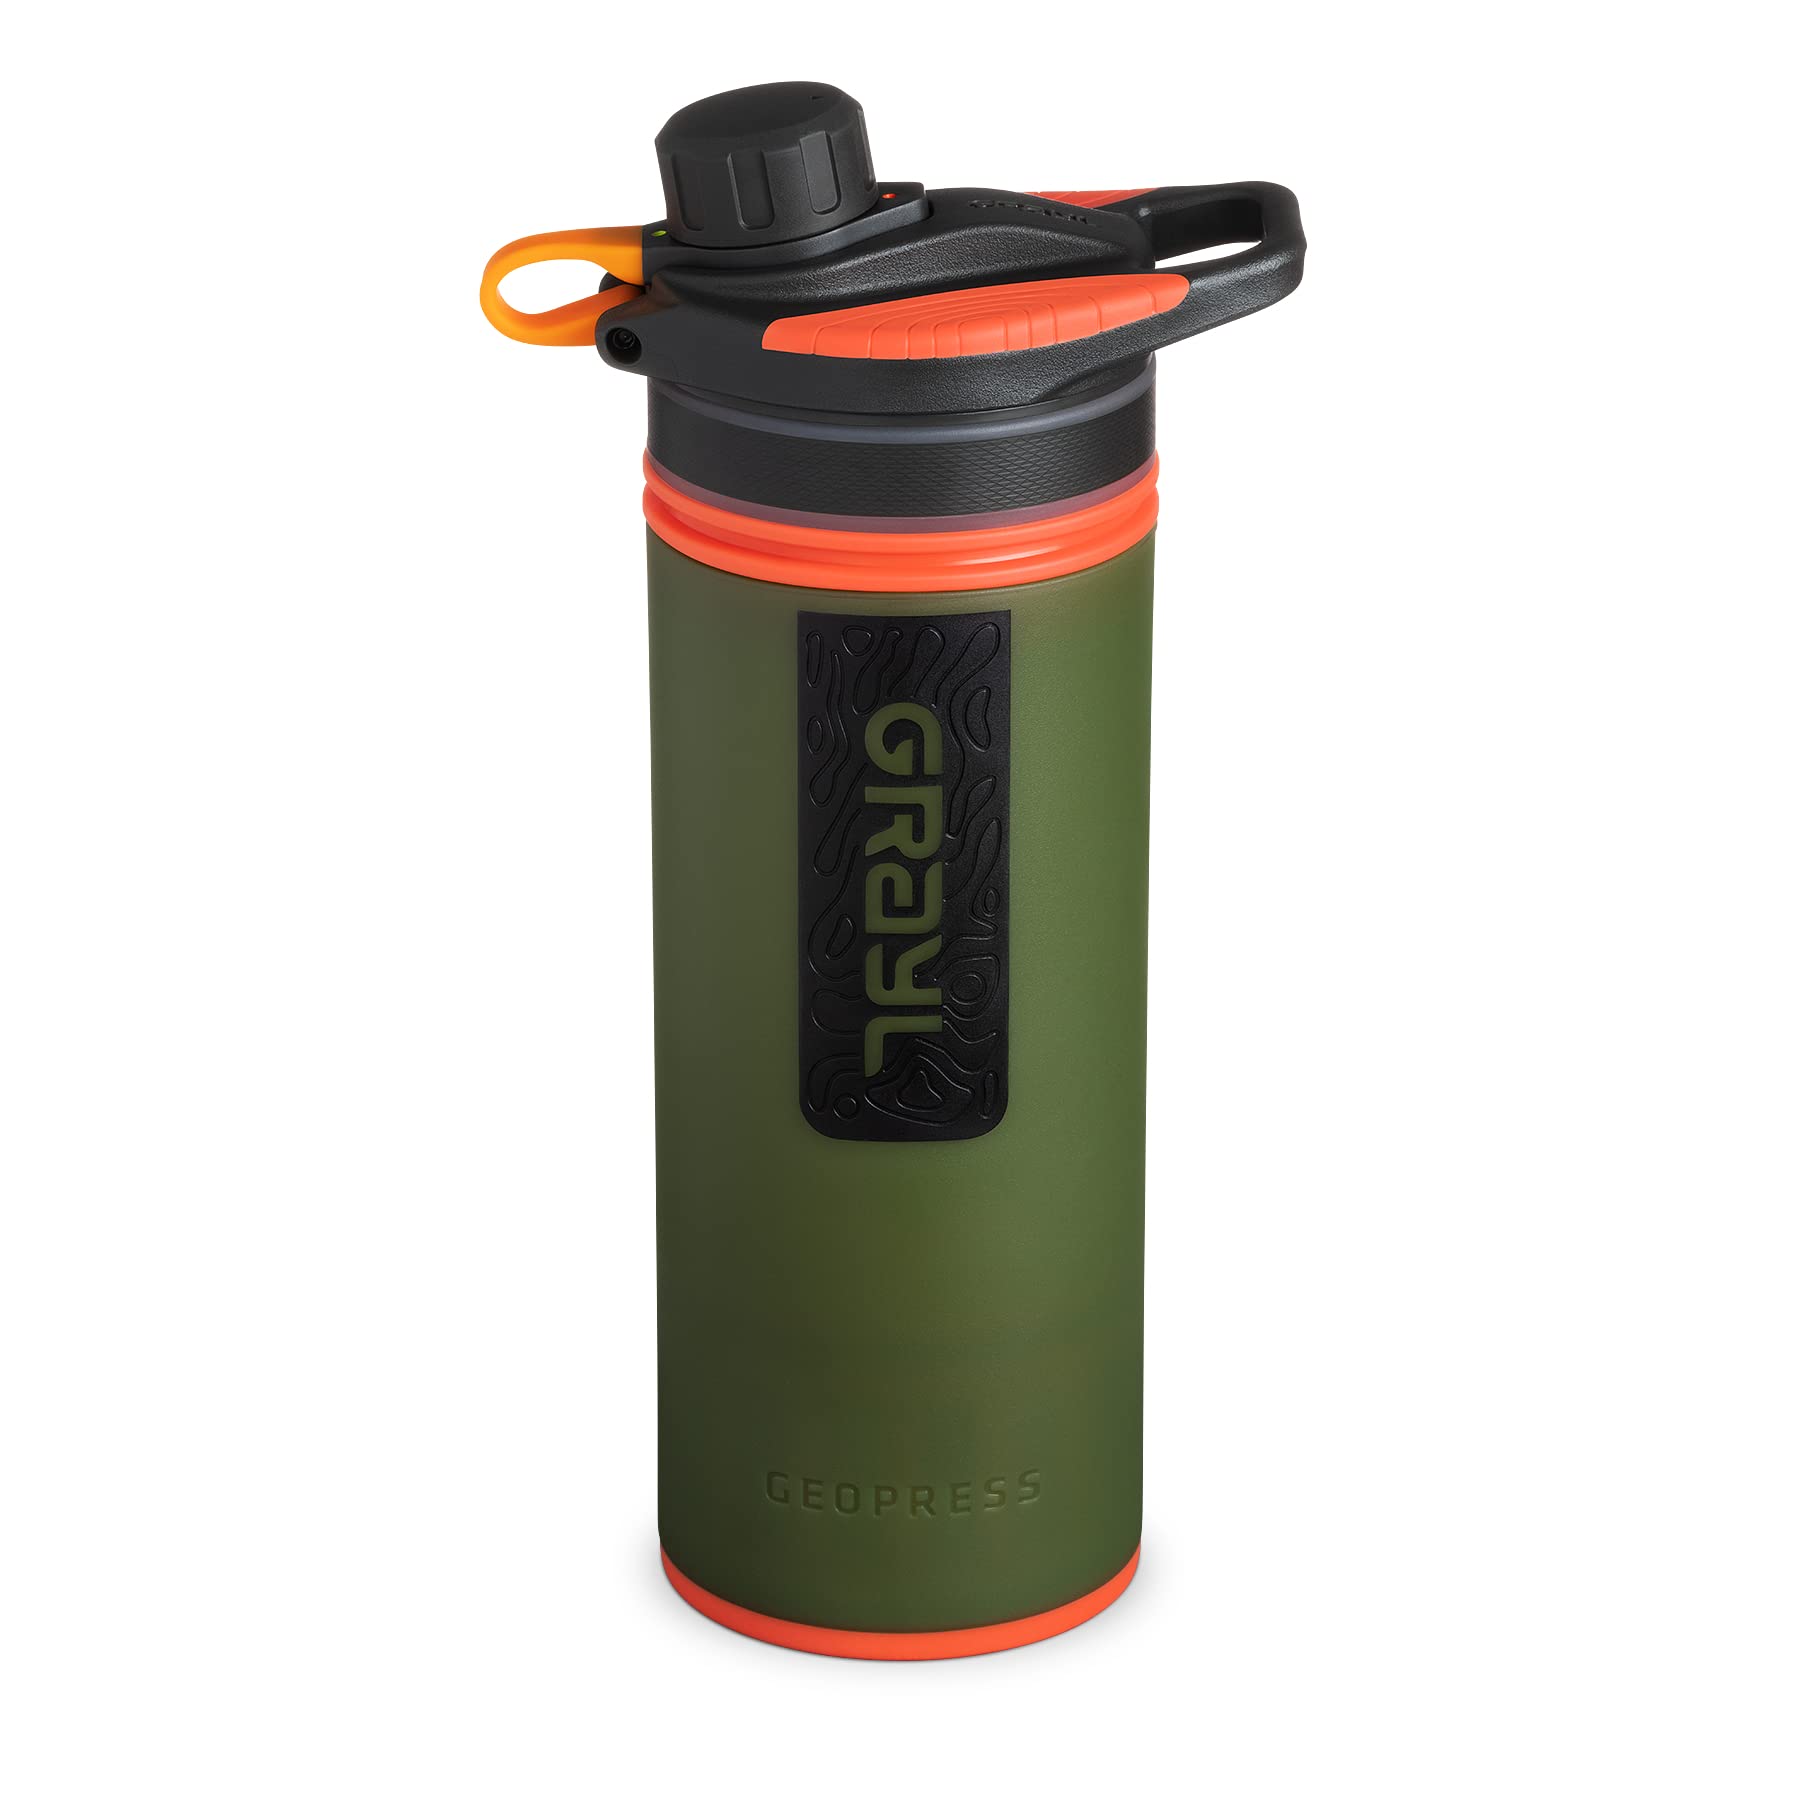 送料無料GRAYL GeoPress 24オンス 浄水器 ボトル ハイキング キャンプ サバイバル 旅行用フィルタ